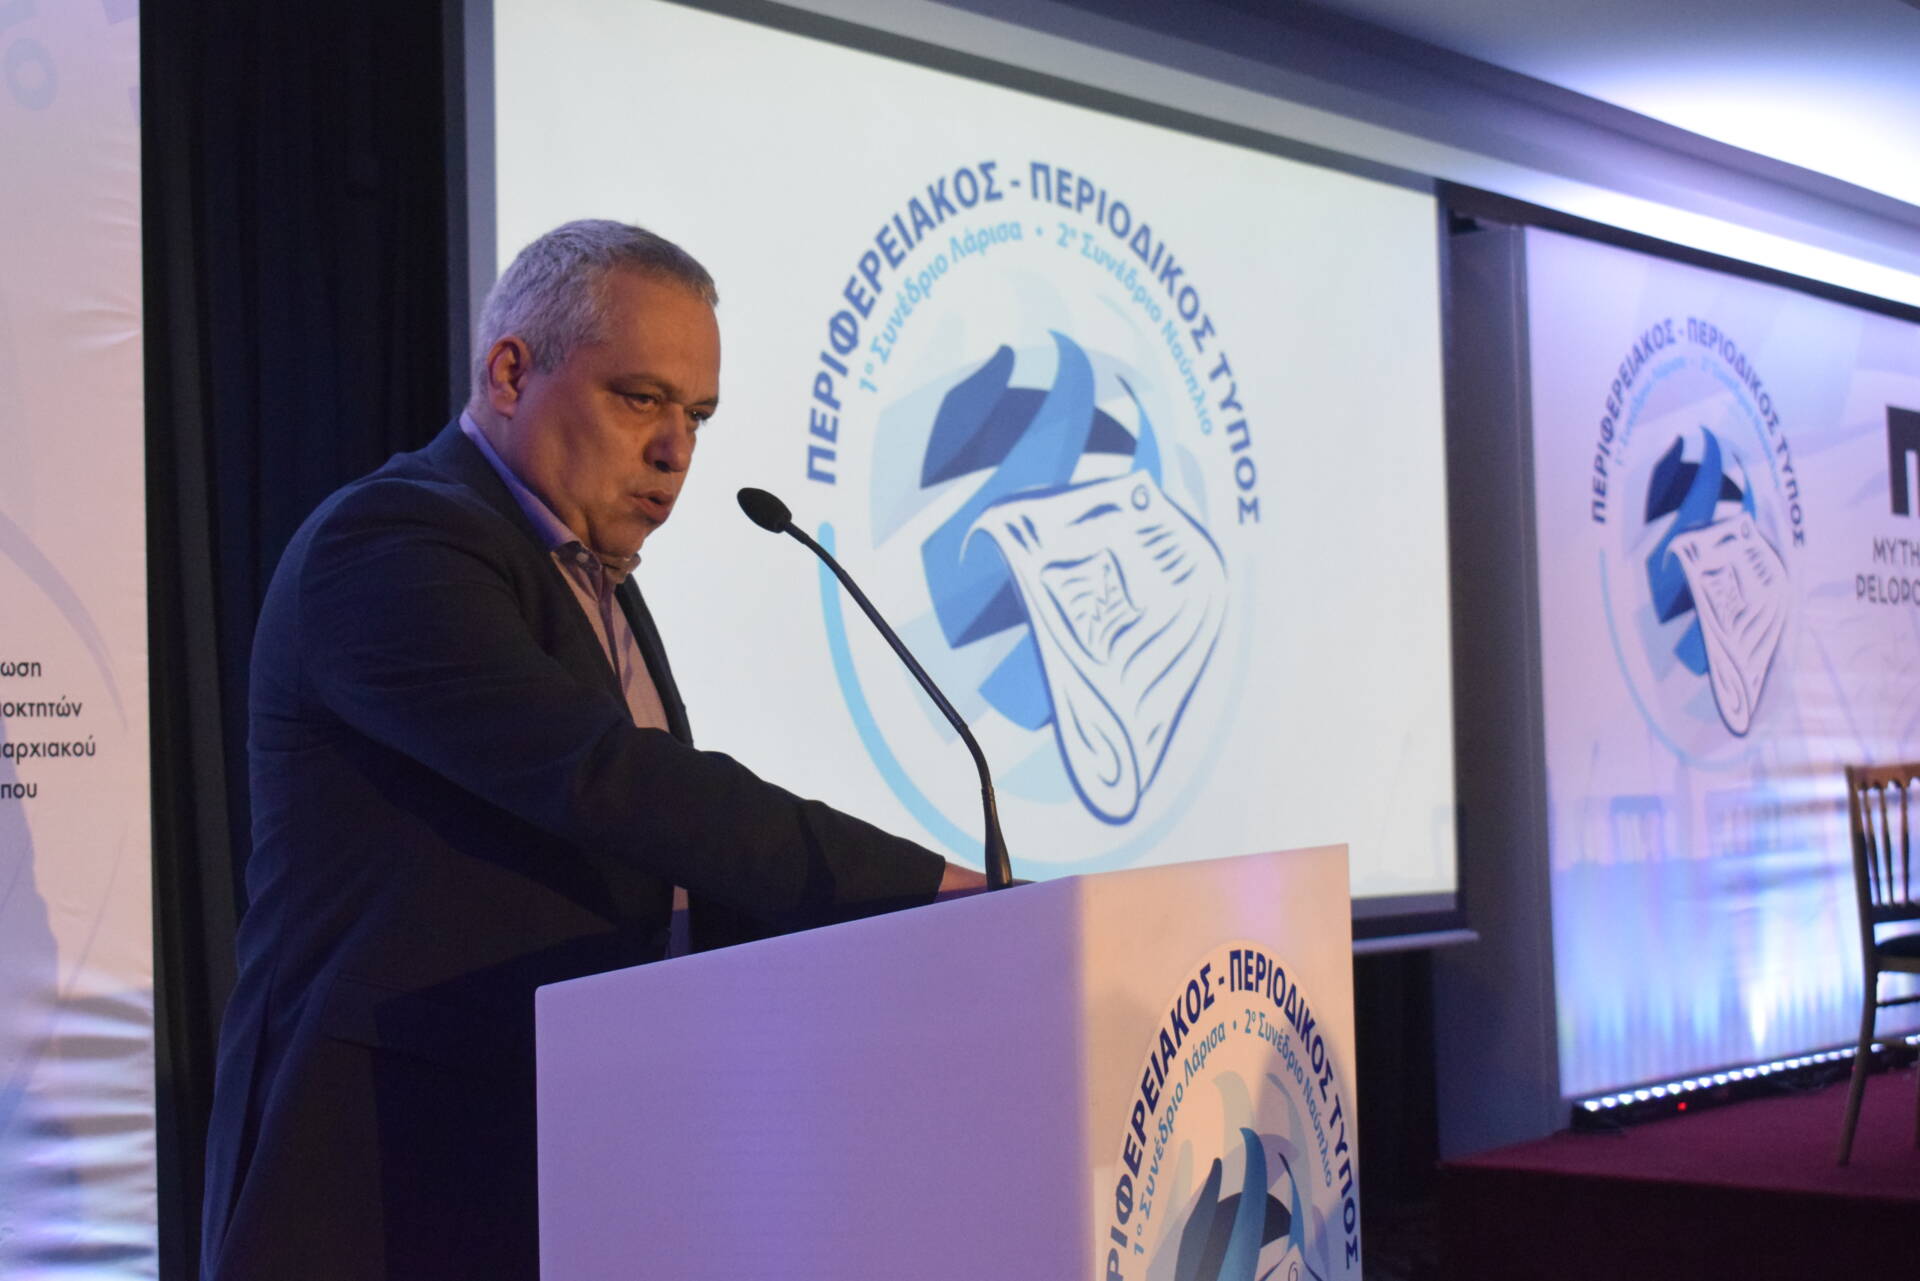 Ο Πρόεδρος της Ε.Ι.Ε.Τ. Αντώνης Μουντάκης στην Επιτροπή για την τήρηση των αρχών της δημοσιογραφικής ηθικής και δεοντολογίας